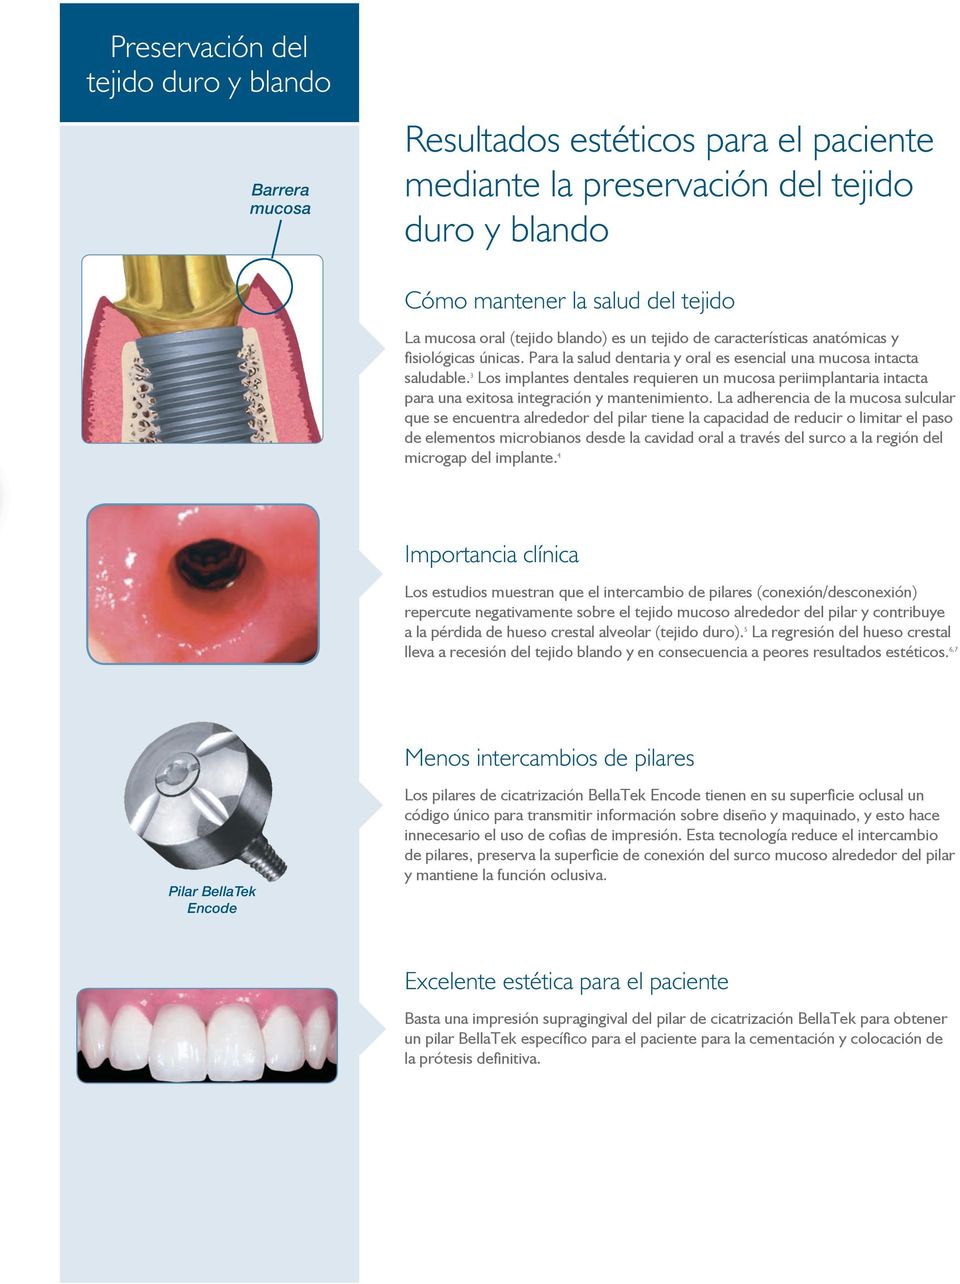 3 Los implantes dentales requieren un mucosa periimplantaria intacta para una exitosa integración y mantenimiento.